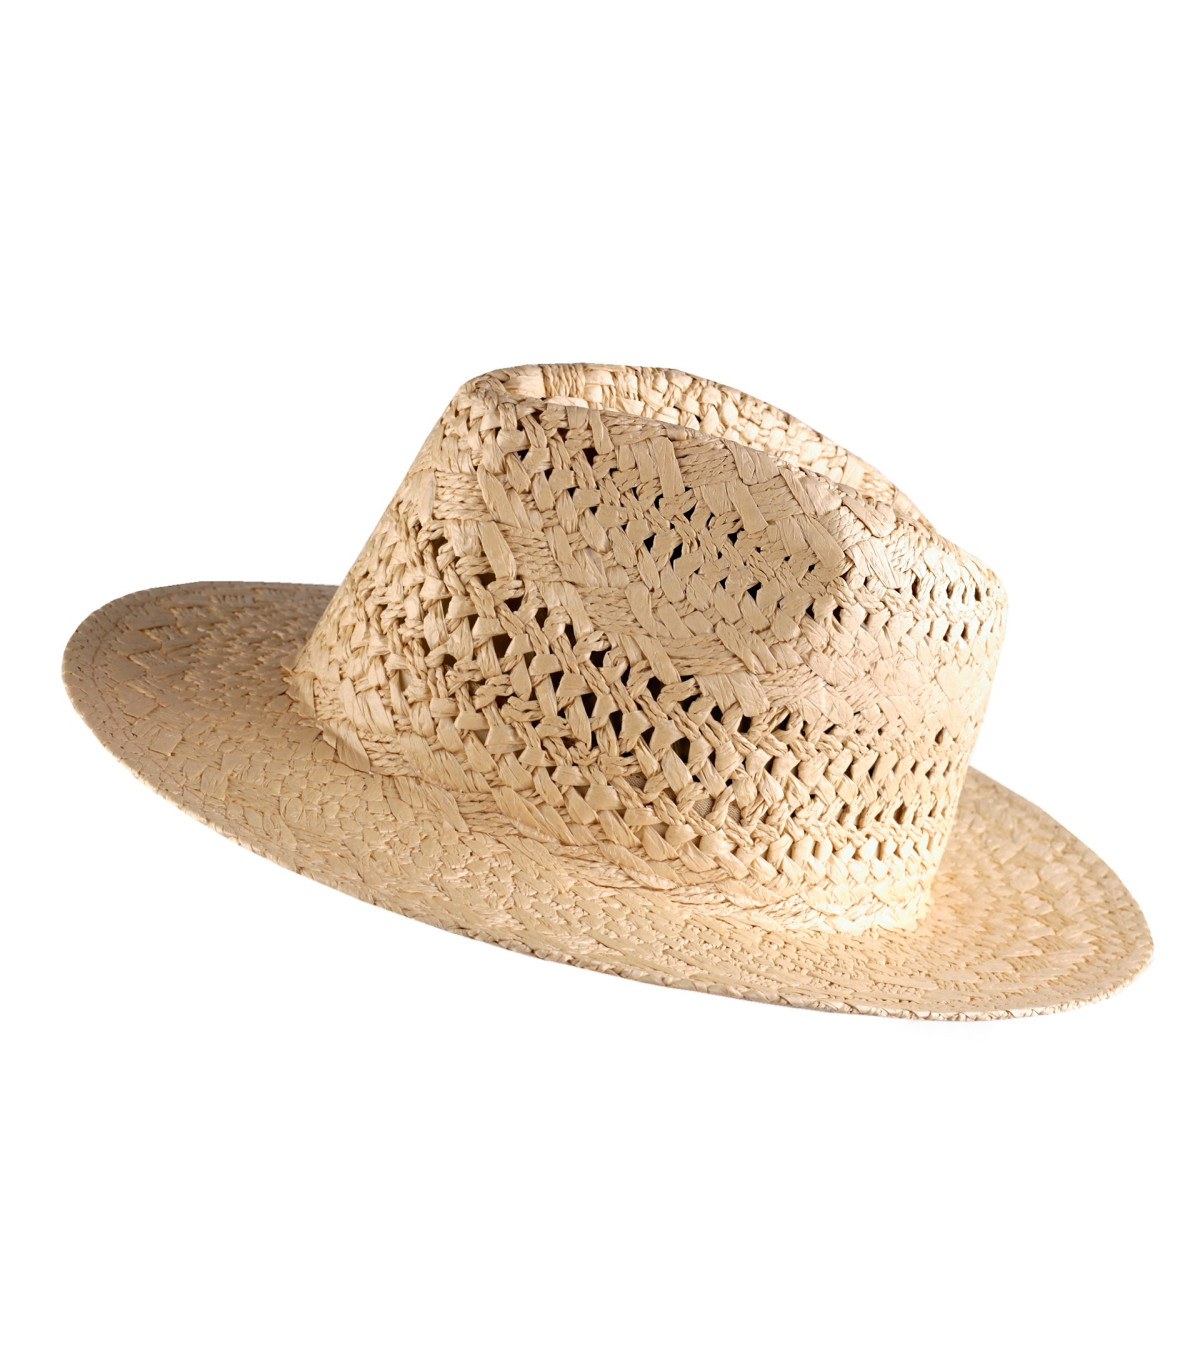 Artipistilos - Sombrero de paja natural unisex: Protección y estilo para  tus días de sol. ¡Consíguelo ahora al mejor precio!